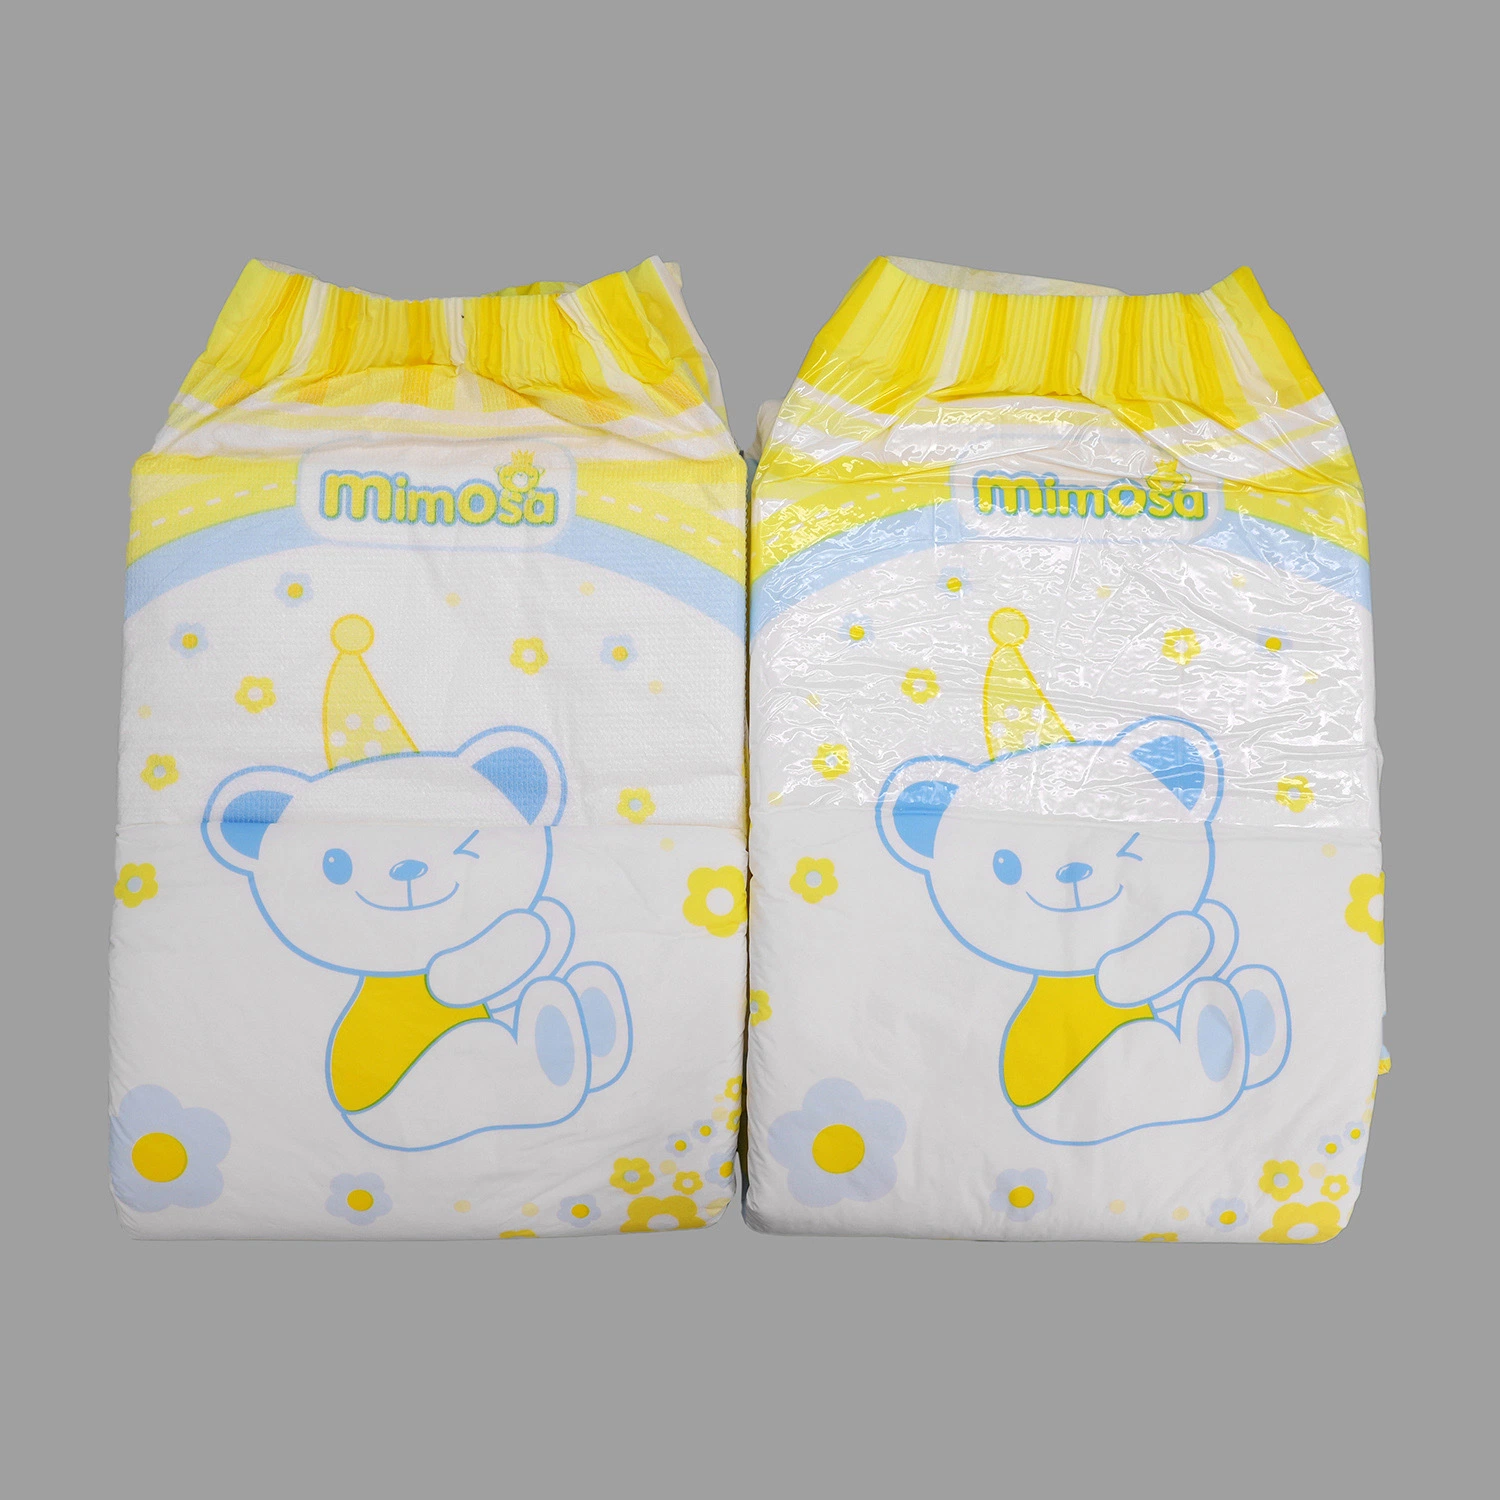 Fralda Factory plástico descartável adulto pull diaper up, grátis adultos diapers calças feito em China quente produtos